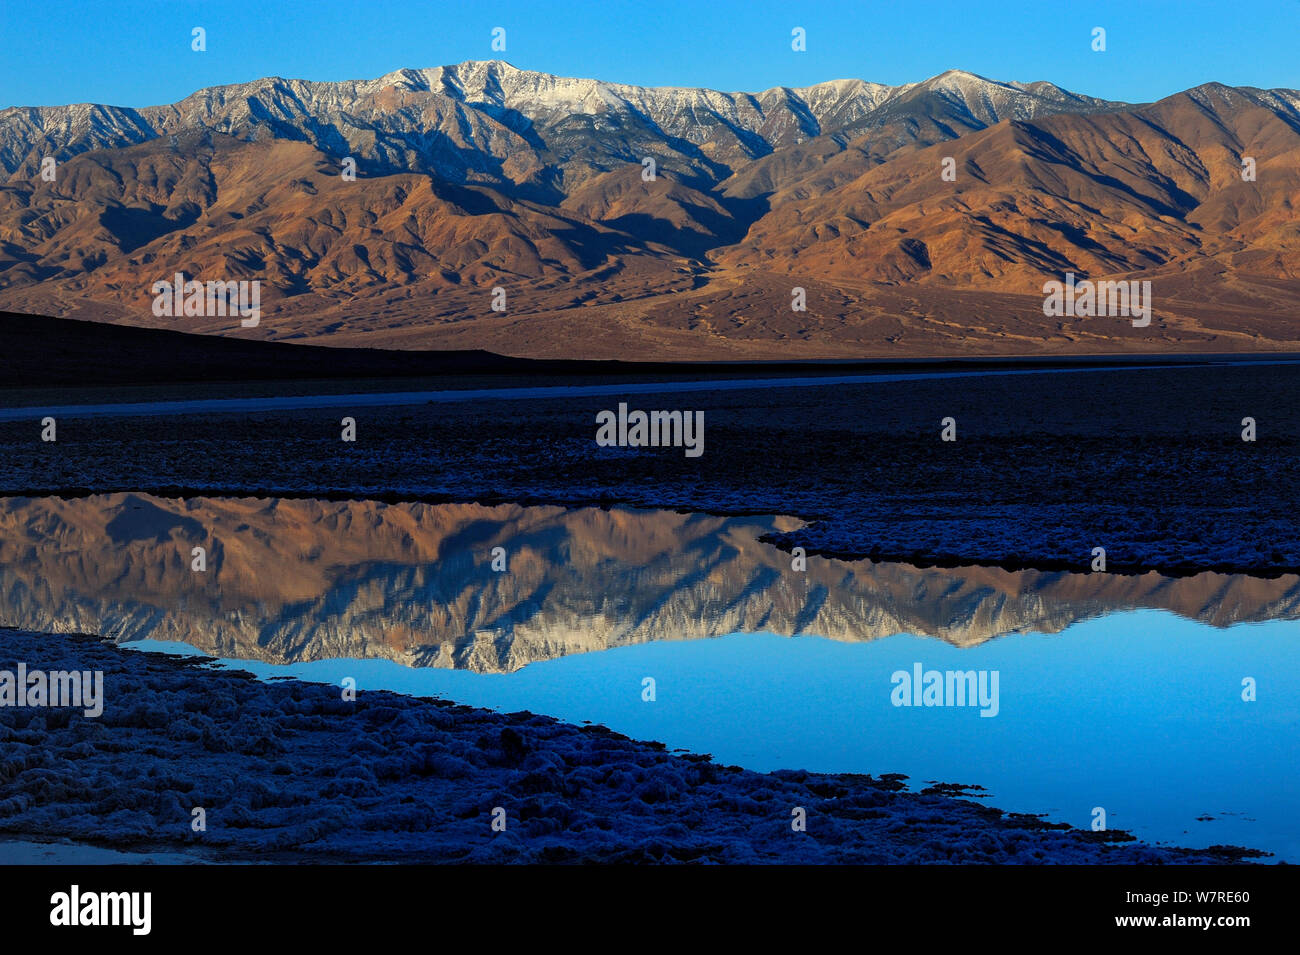 Pic de télescope reflète dans l étang à Badwater, Death Valley National Park, California, USA Janvier 2013 Banque D'Images